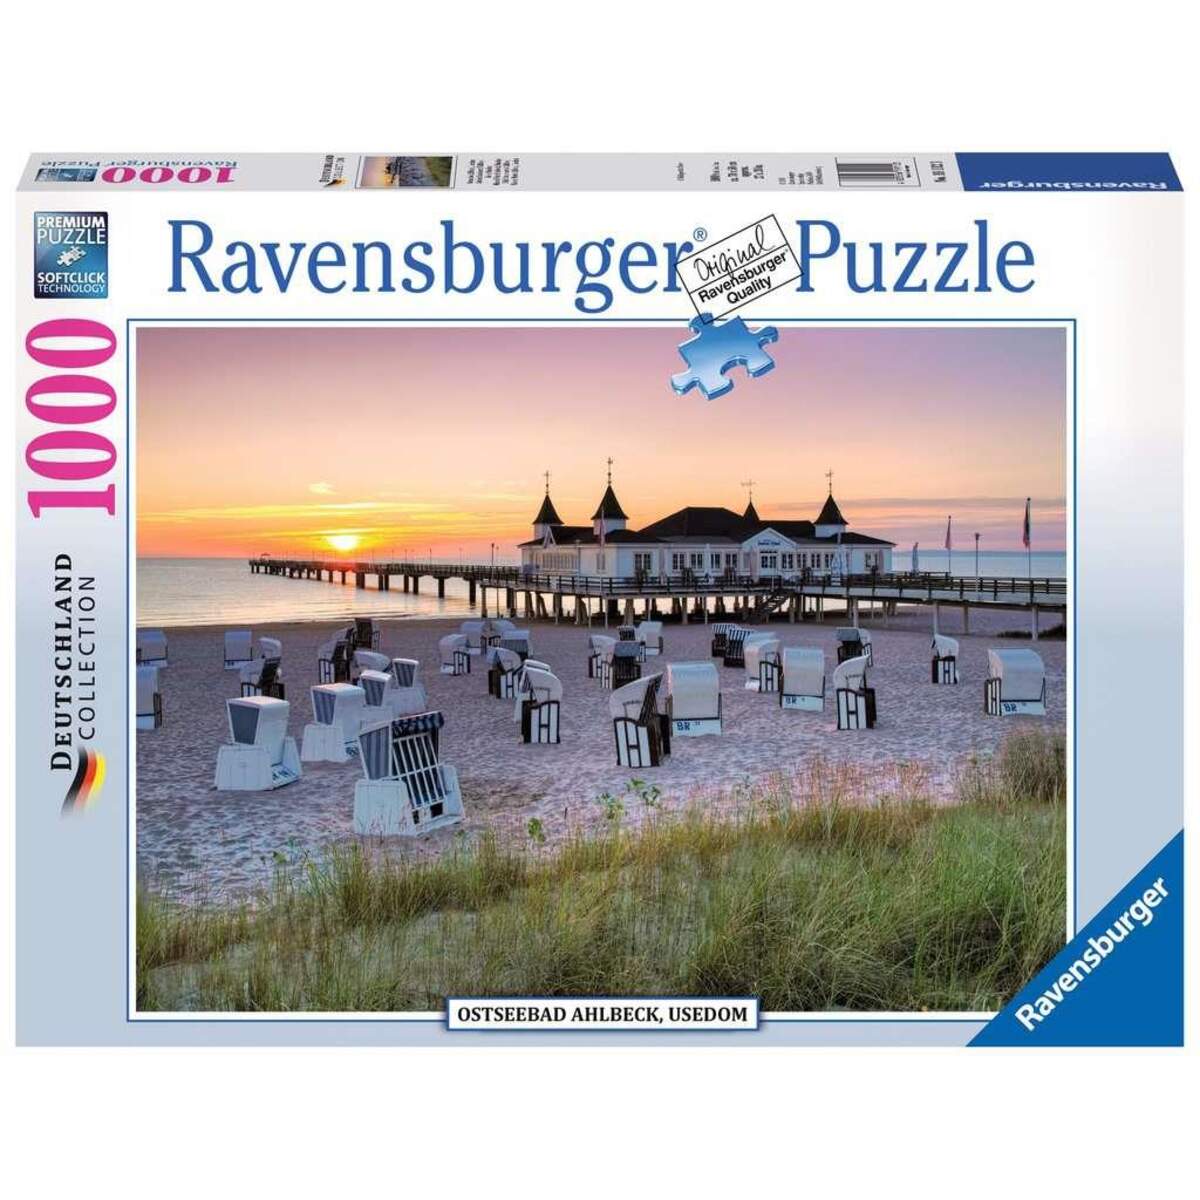 Ravensburger Puzzle Ostseebad Ahlbeck Usedom, 1000 Teile